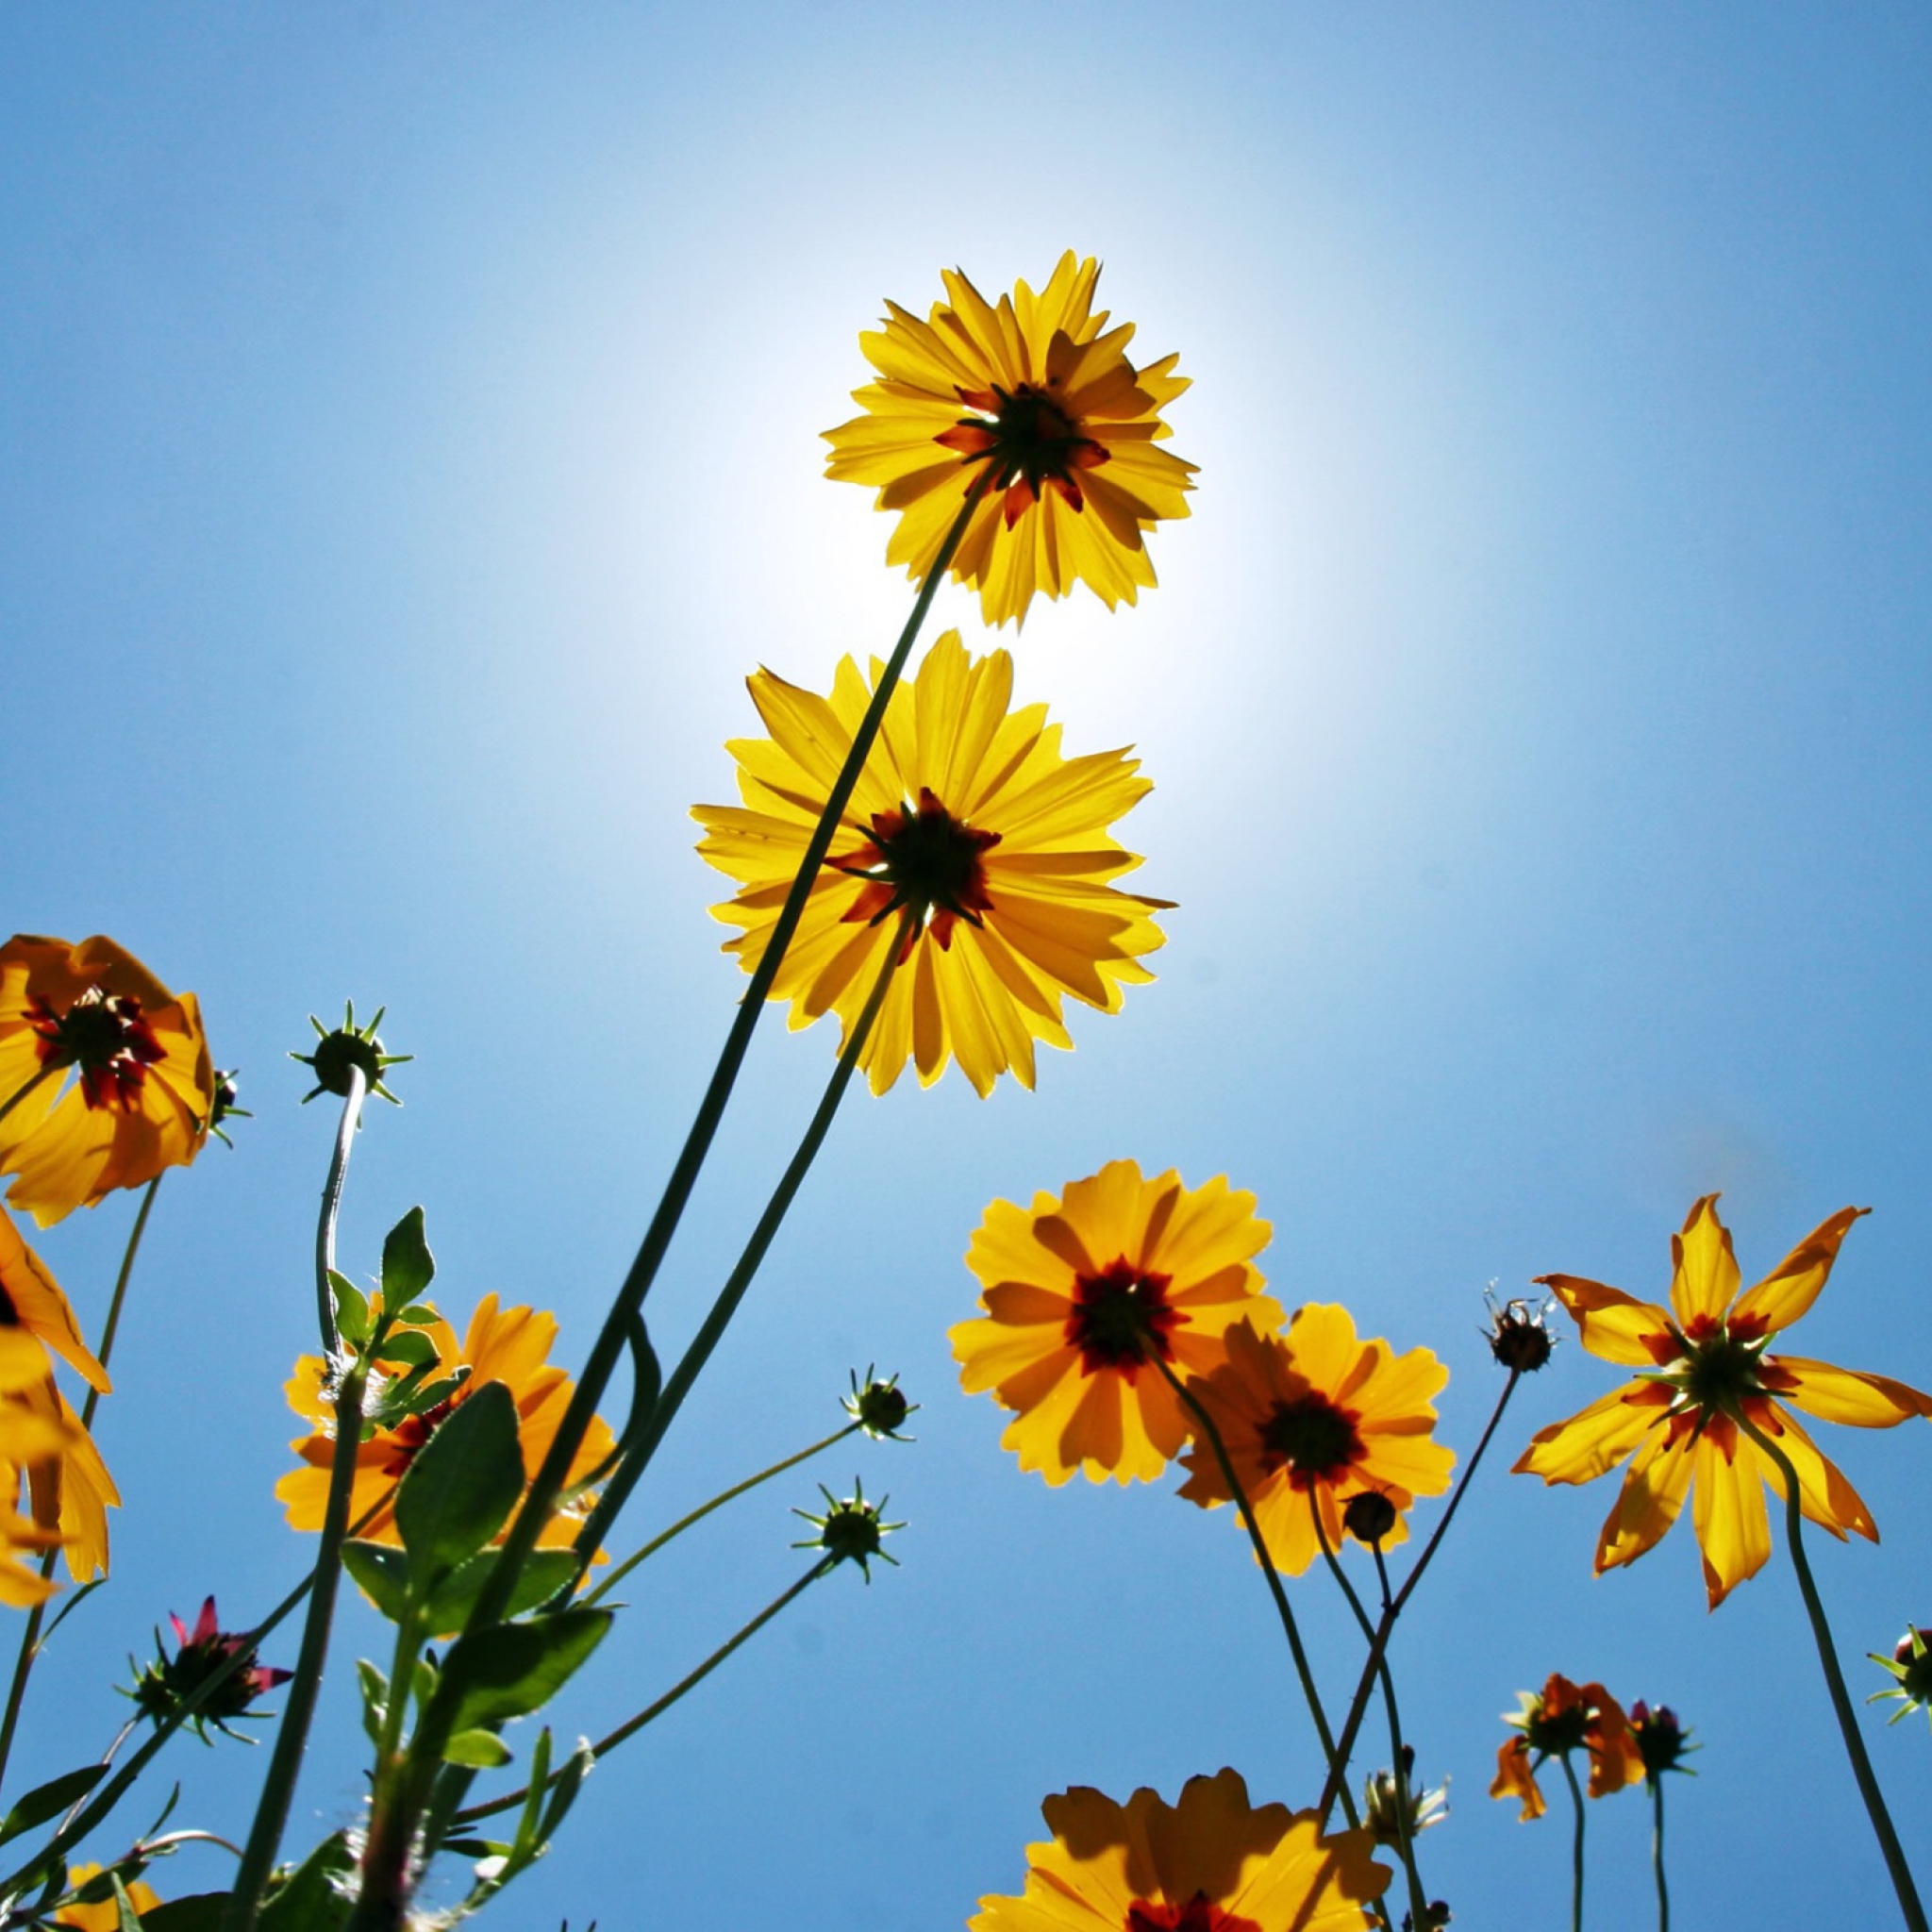 Das Yellow Flowers, Sunlight And Blue Sky Wallpaper 2048x2048